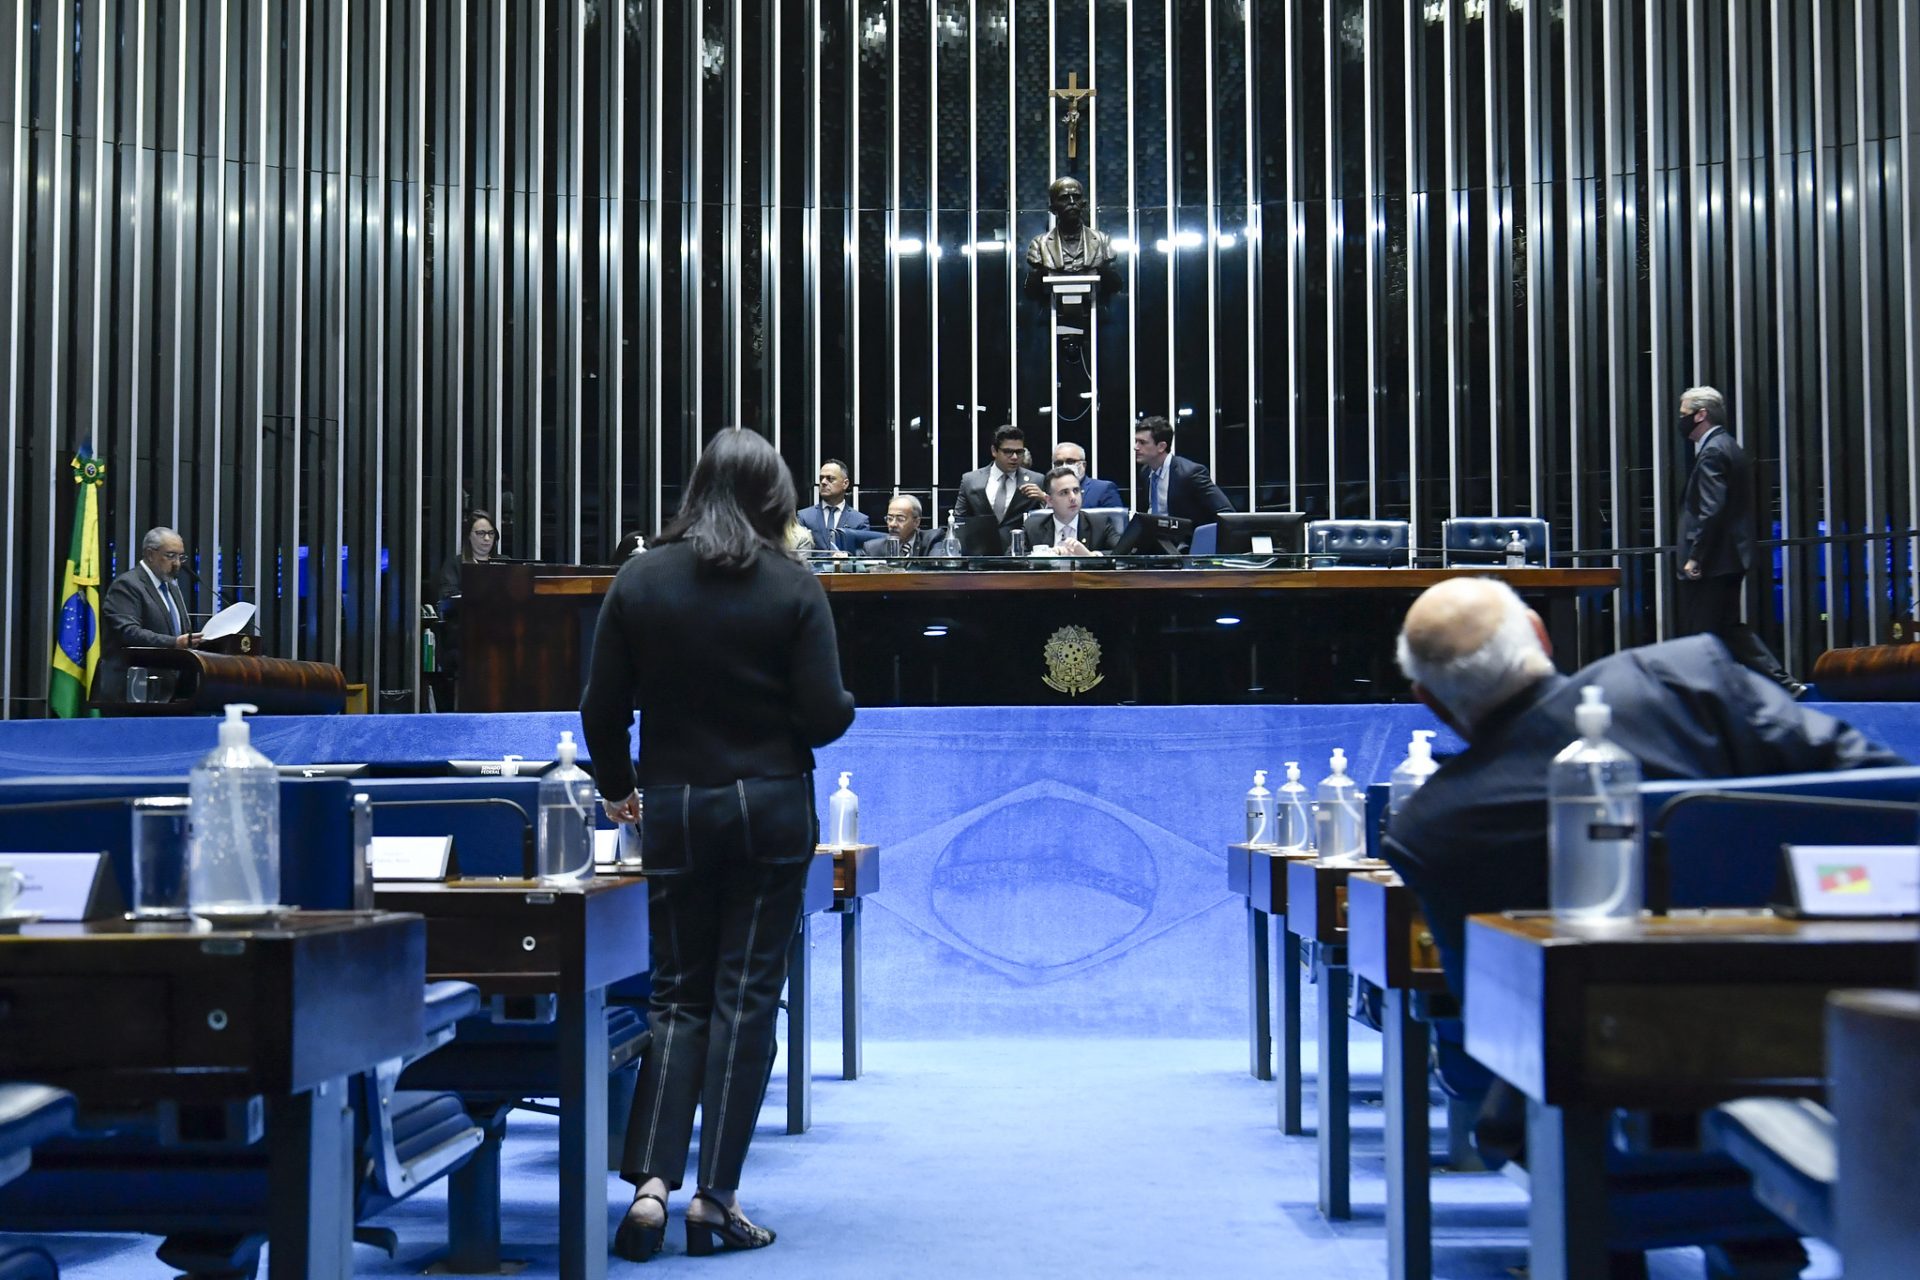 27 governadores participam de sessão de debates sobre a reforma tributária nesta terça-feira (28) no Senado -Foto: Waldemir Barreto/Agência Senado